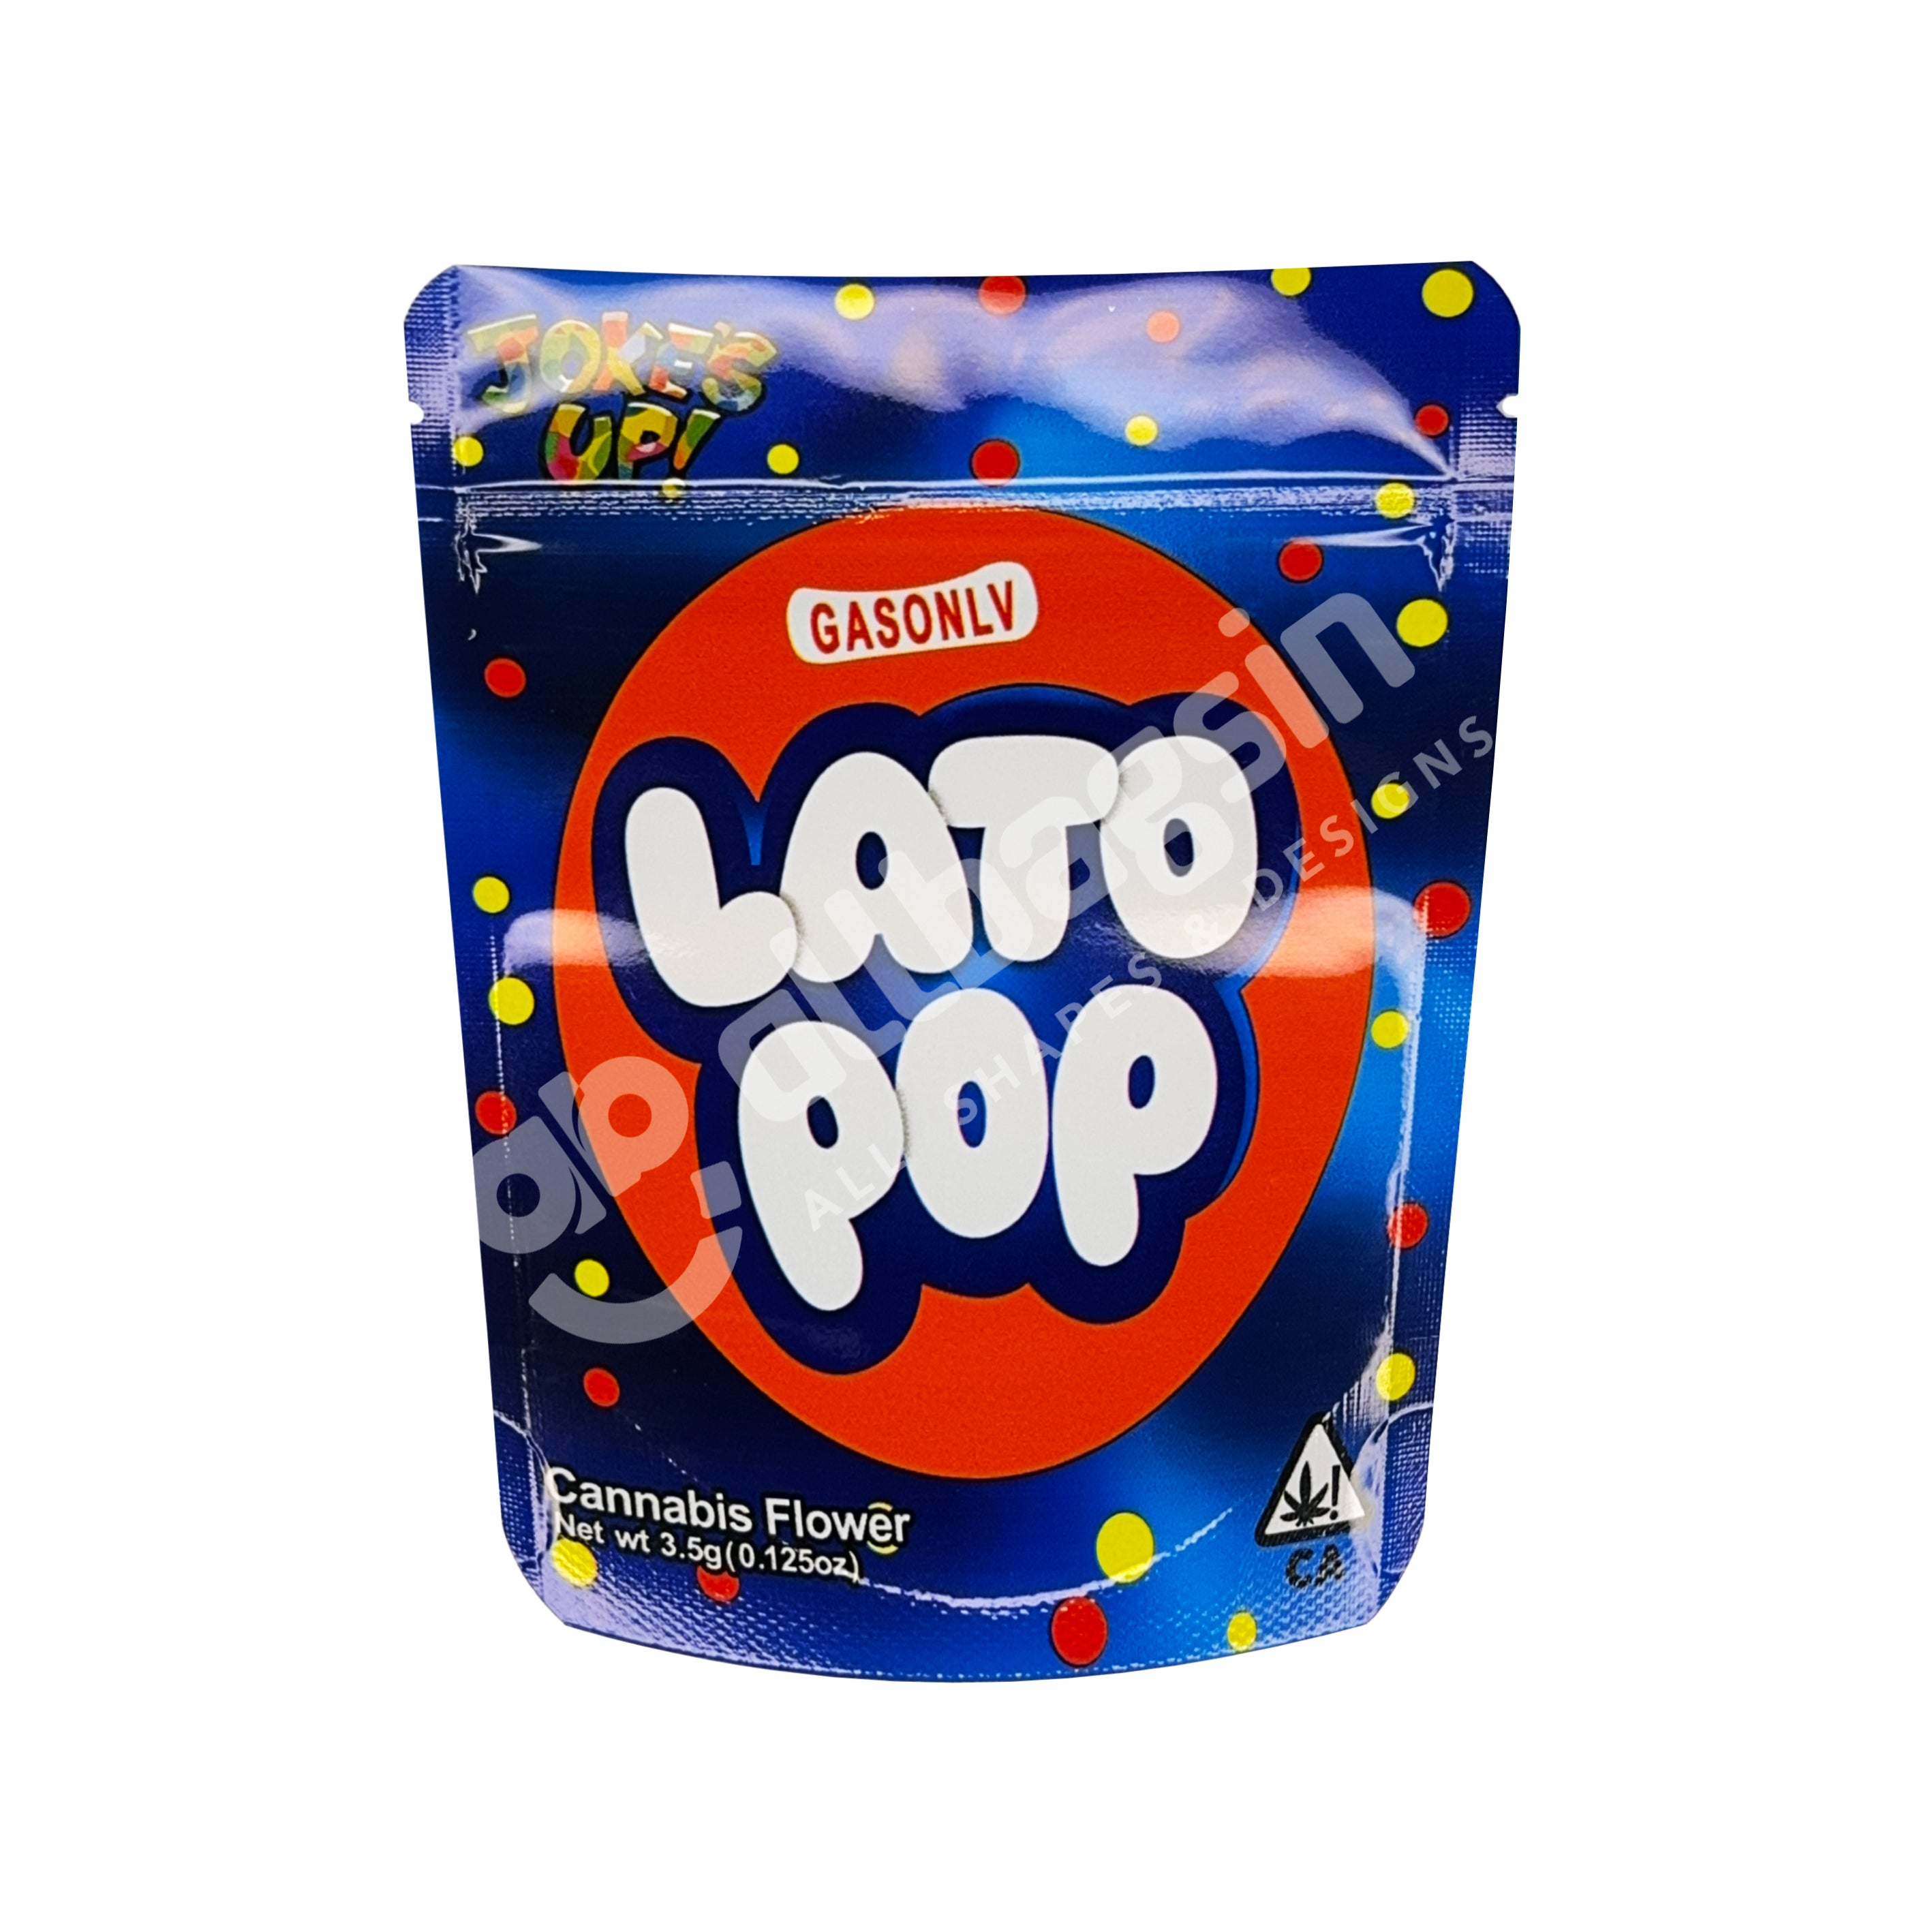 Joke's up Lato Pop 3.5g Mylar Bag